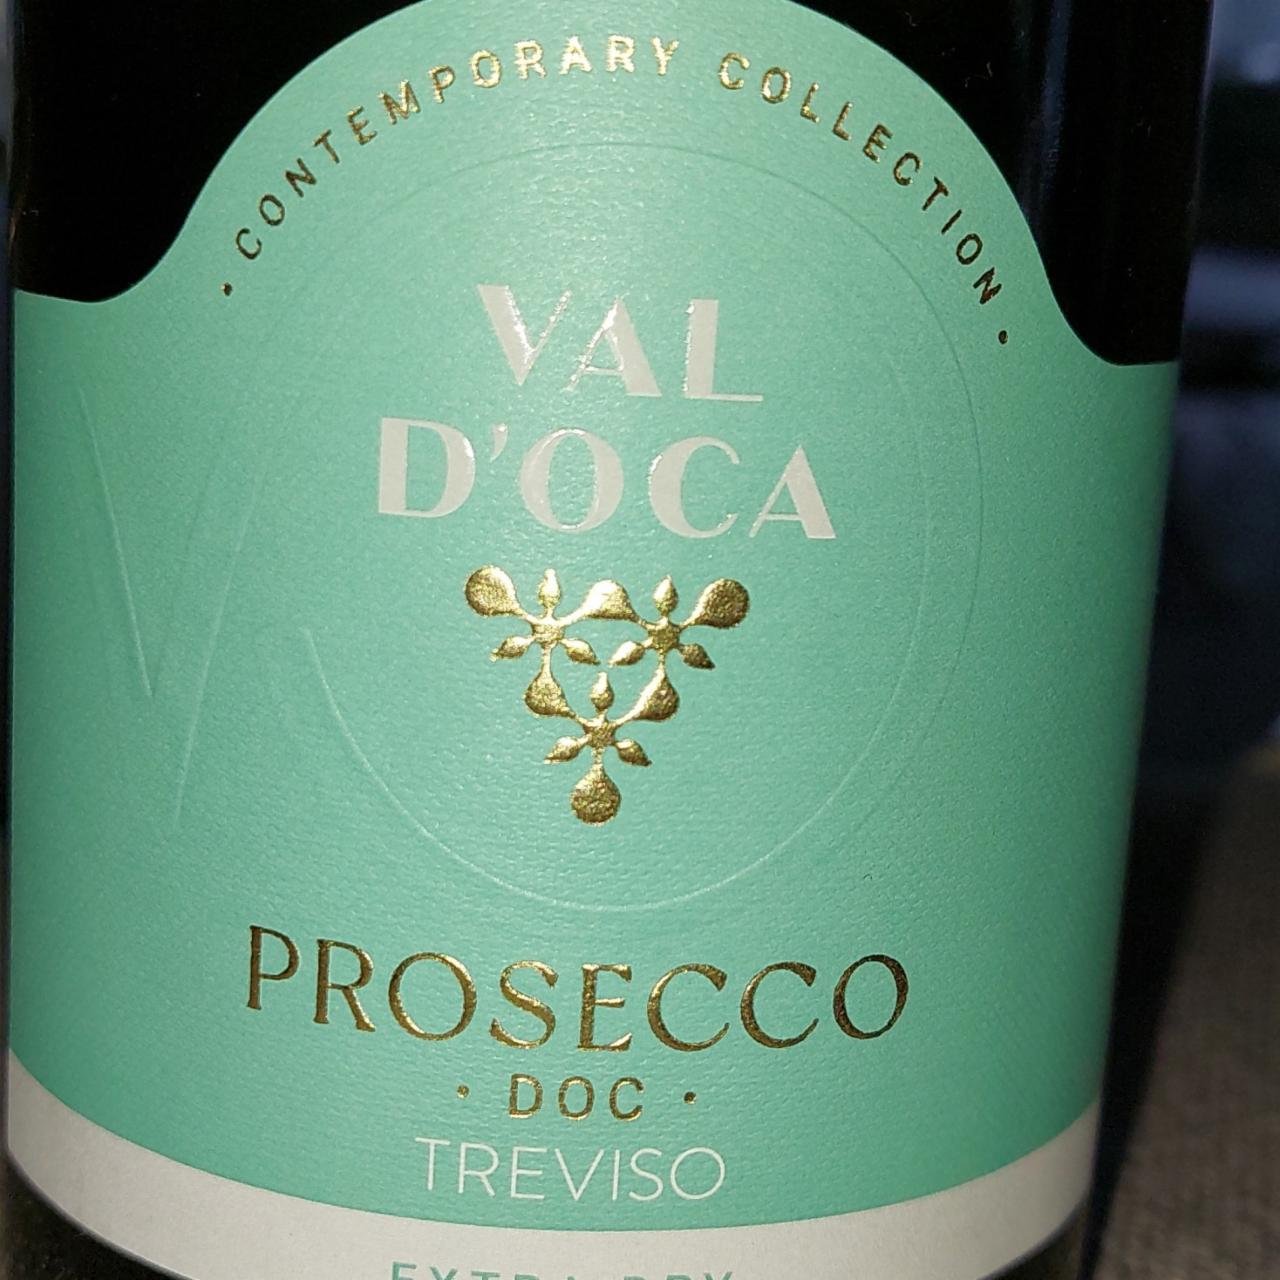 Fotografie - Prosecco DOC Treviso Extra Dry Val D'Oca